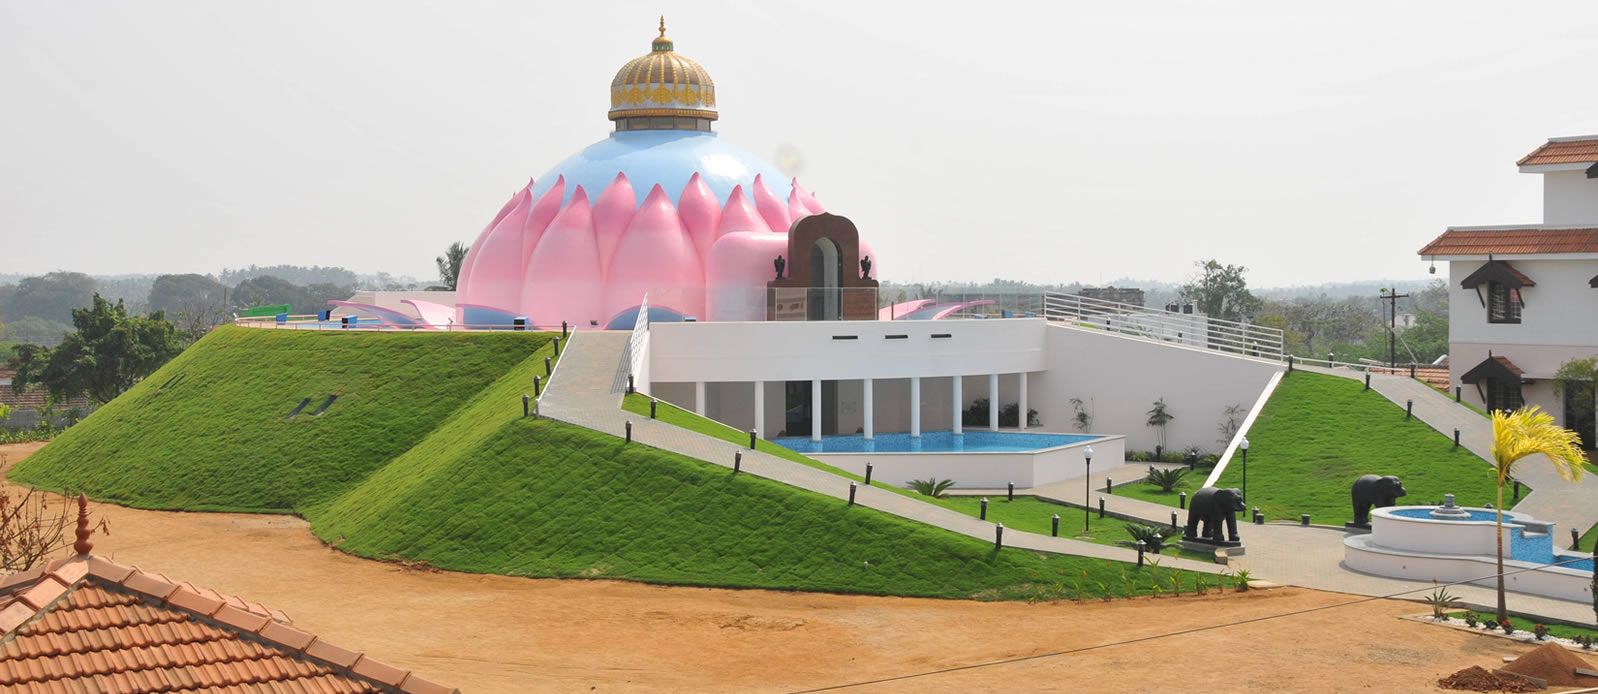 Lotus Temple, Chettipalayam - Satchidananda Aalayam              